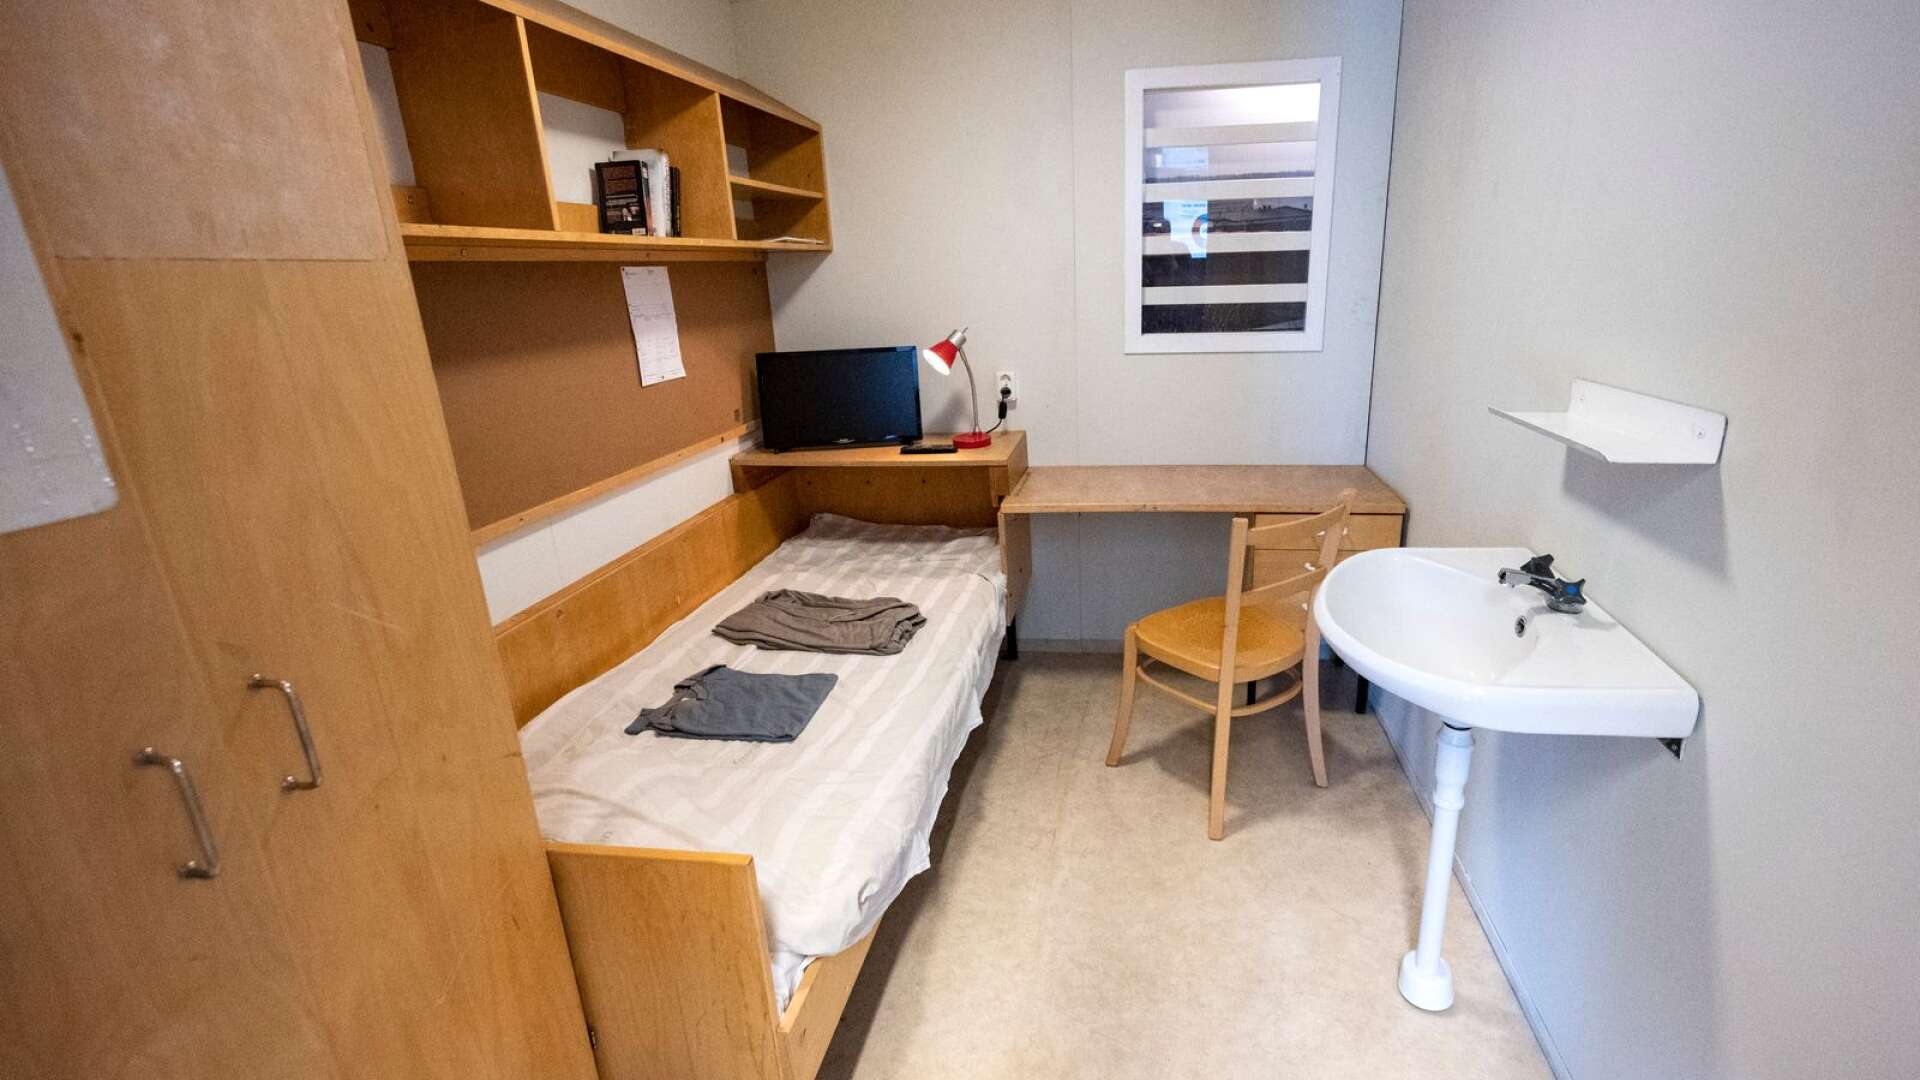 Modell av en cell i den rullande utställning Kriminalvården arrangerade 2020 i samband med aviseringen av myndighetens planer på att etablera ett nytt fängelse. 
Den anstalten hamnade i östra Sverige.